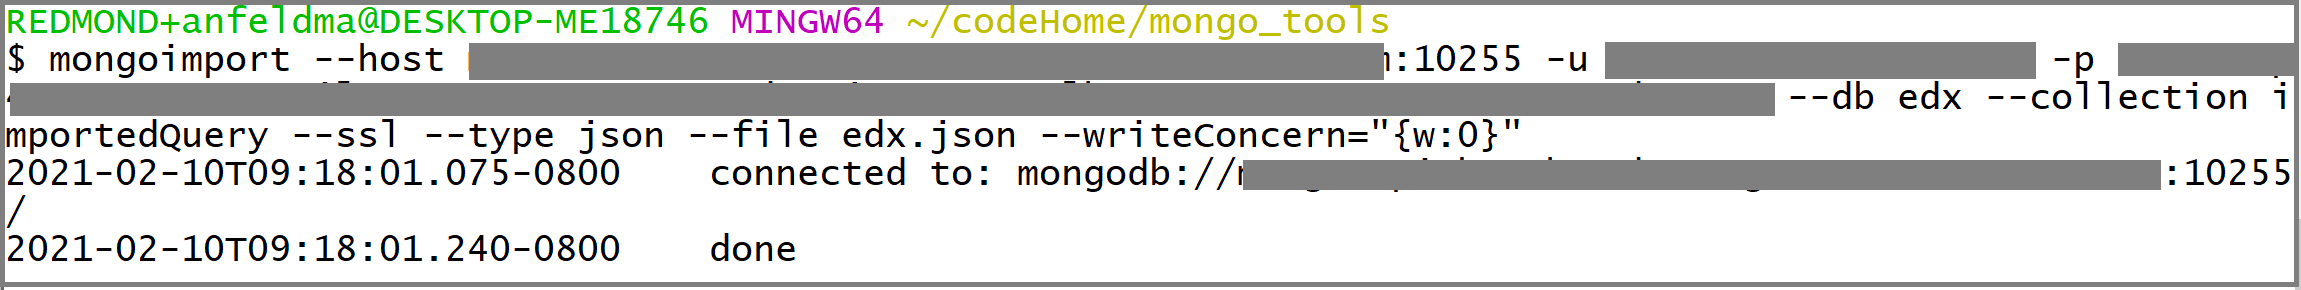 Capture d’écran de l’appel mongoexport